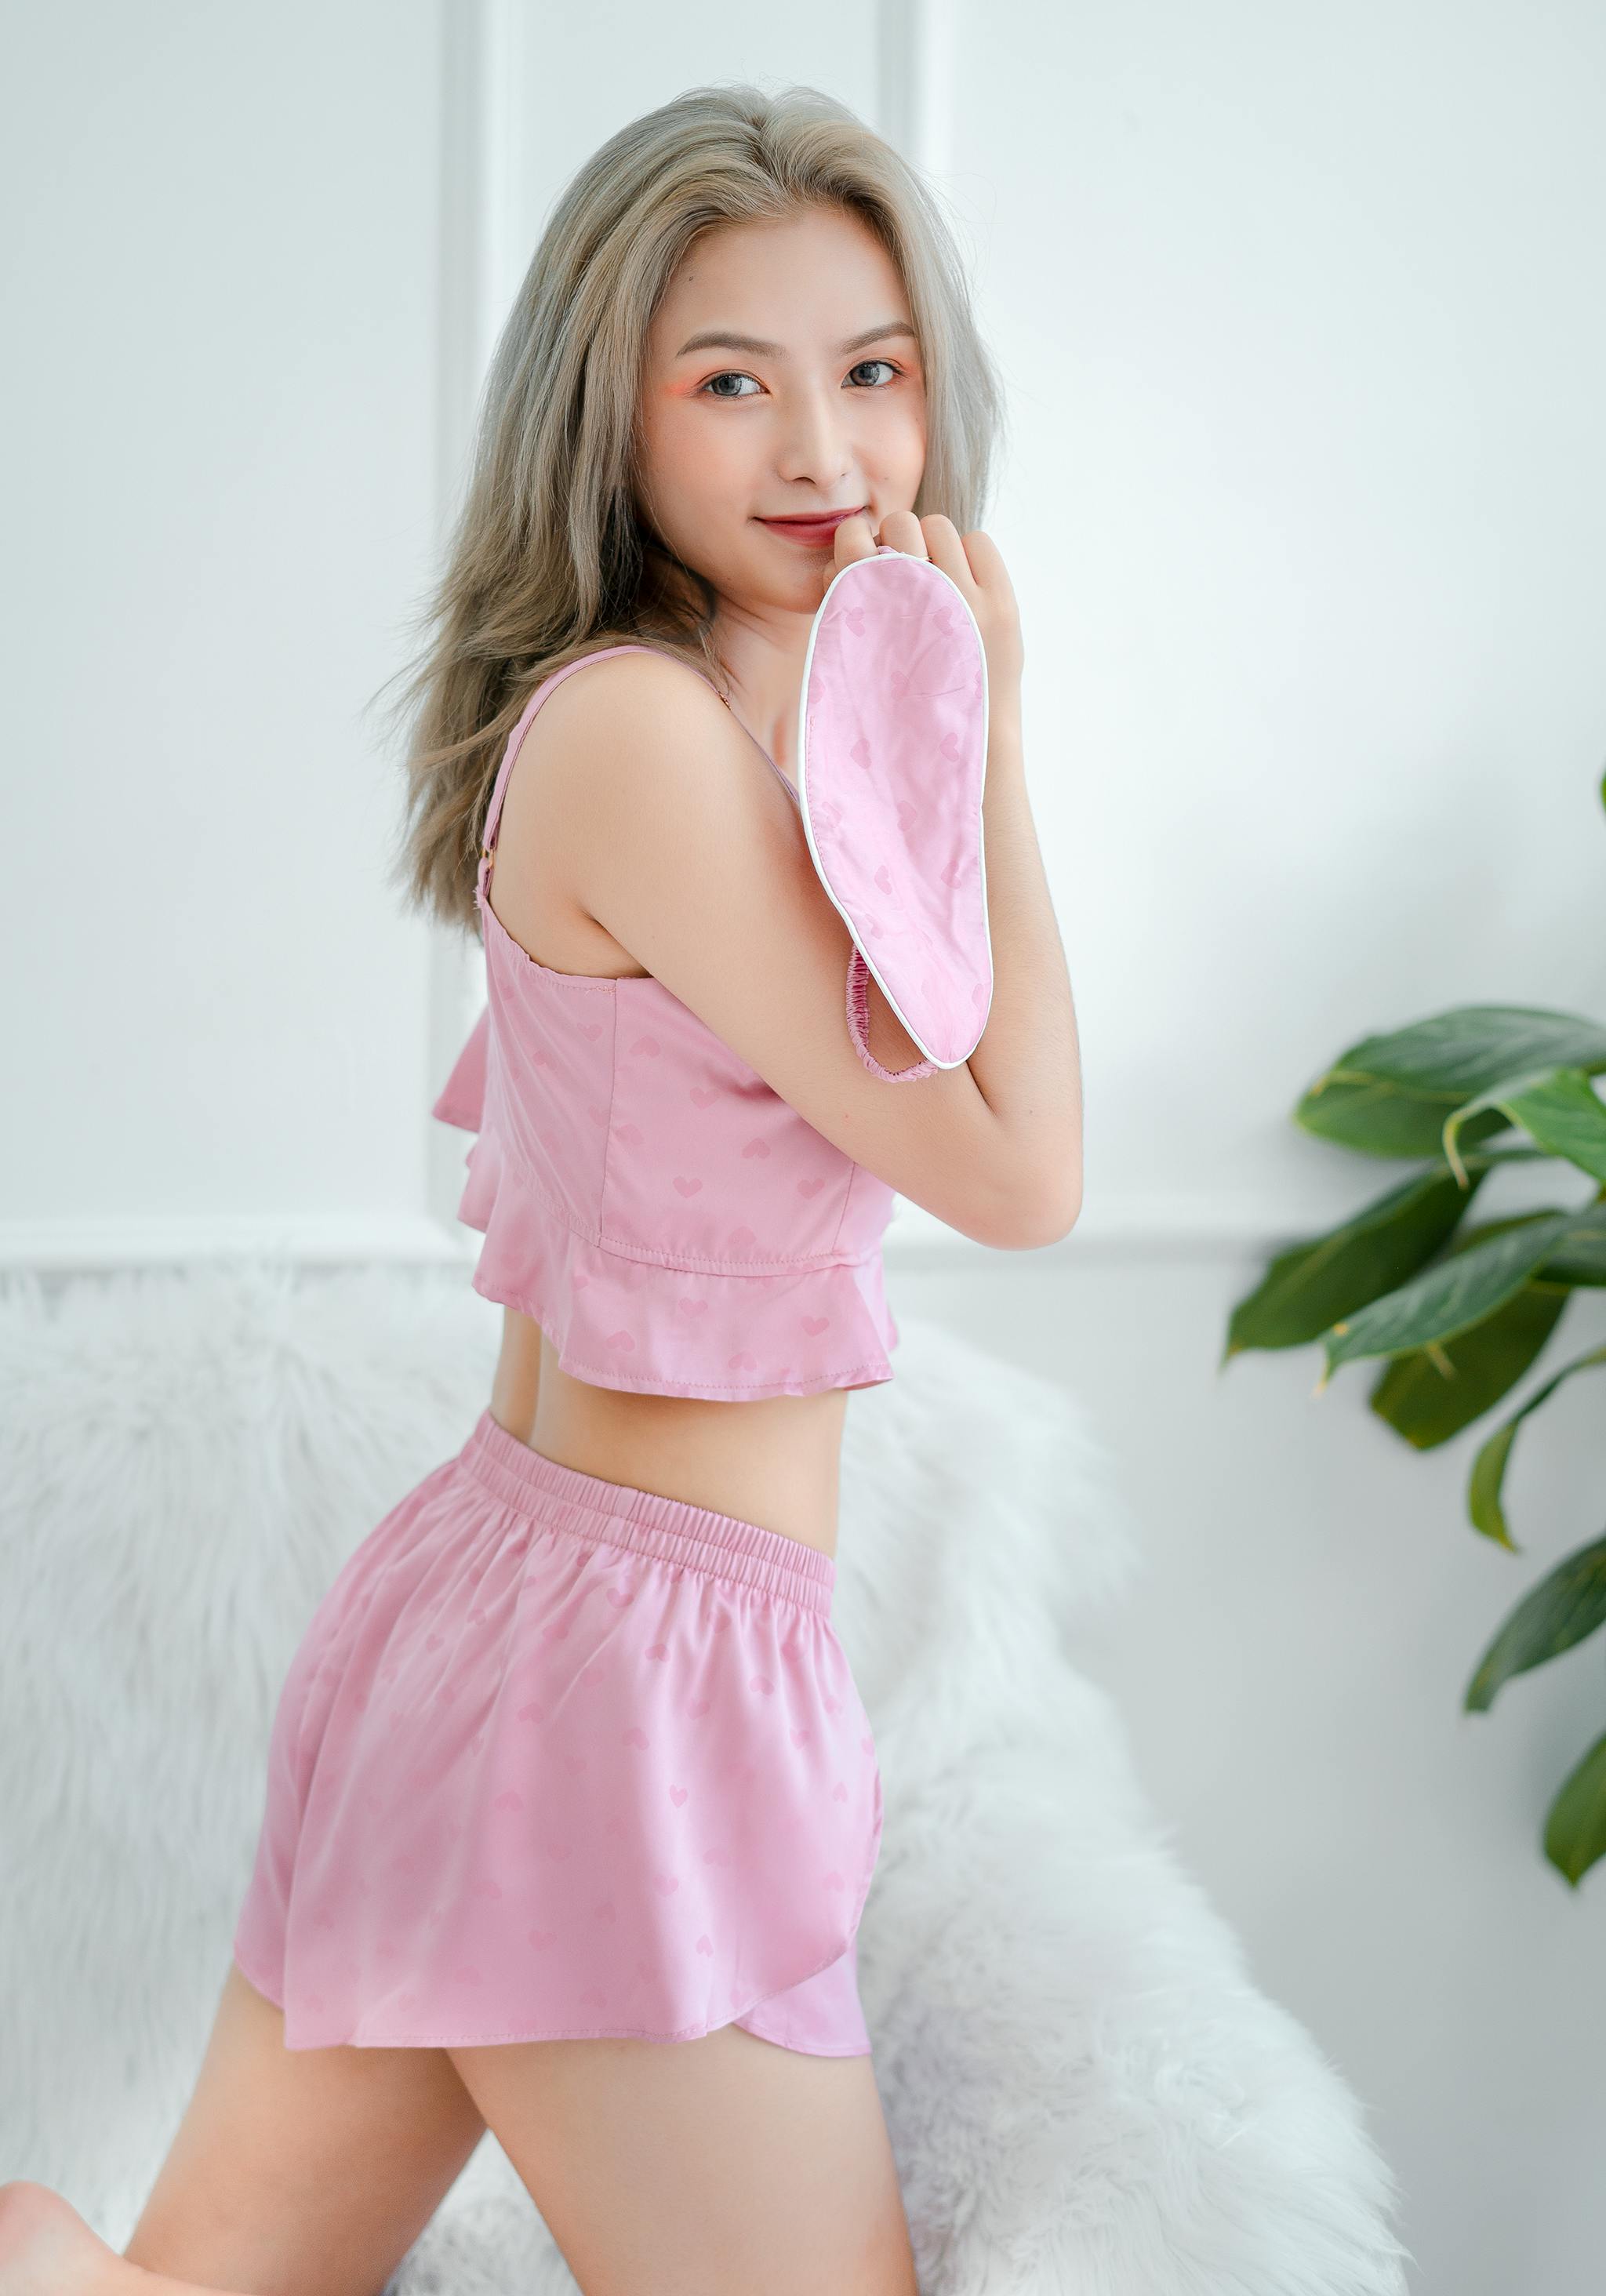 Young Schoolgirl Model Top Nn